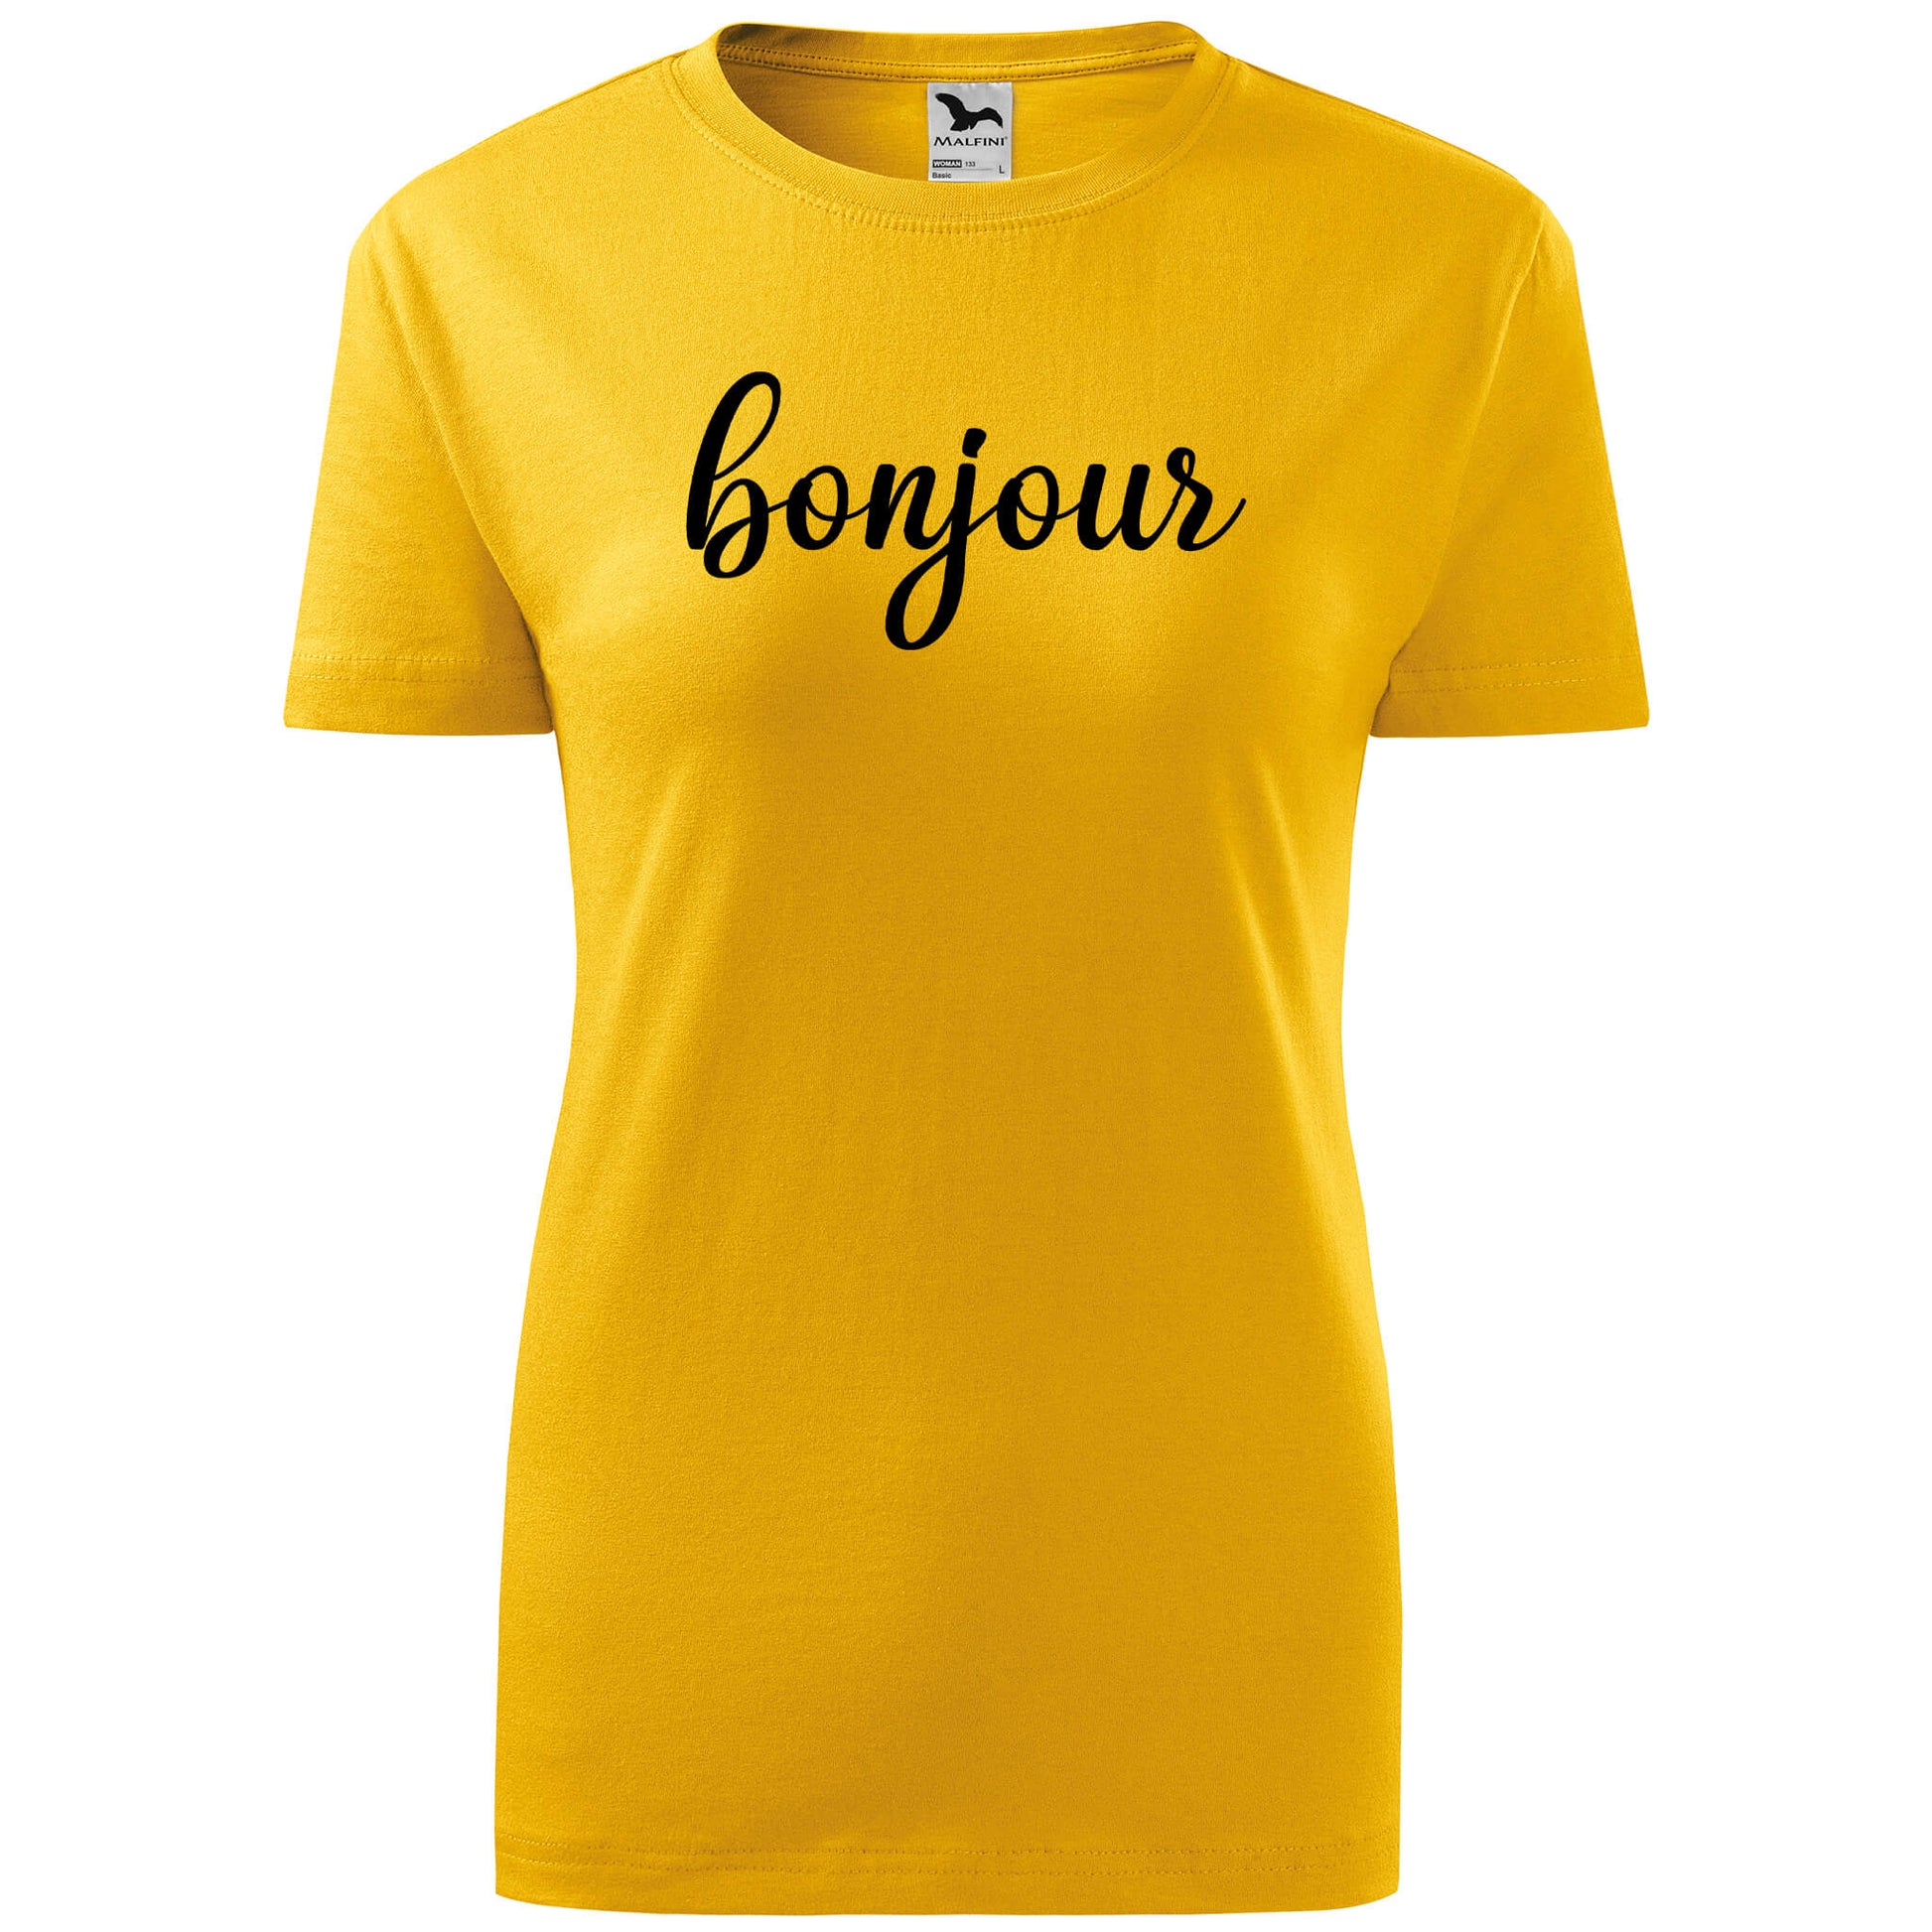 T-shirt - bonjour - rvdesignprint